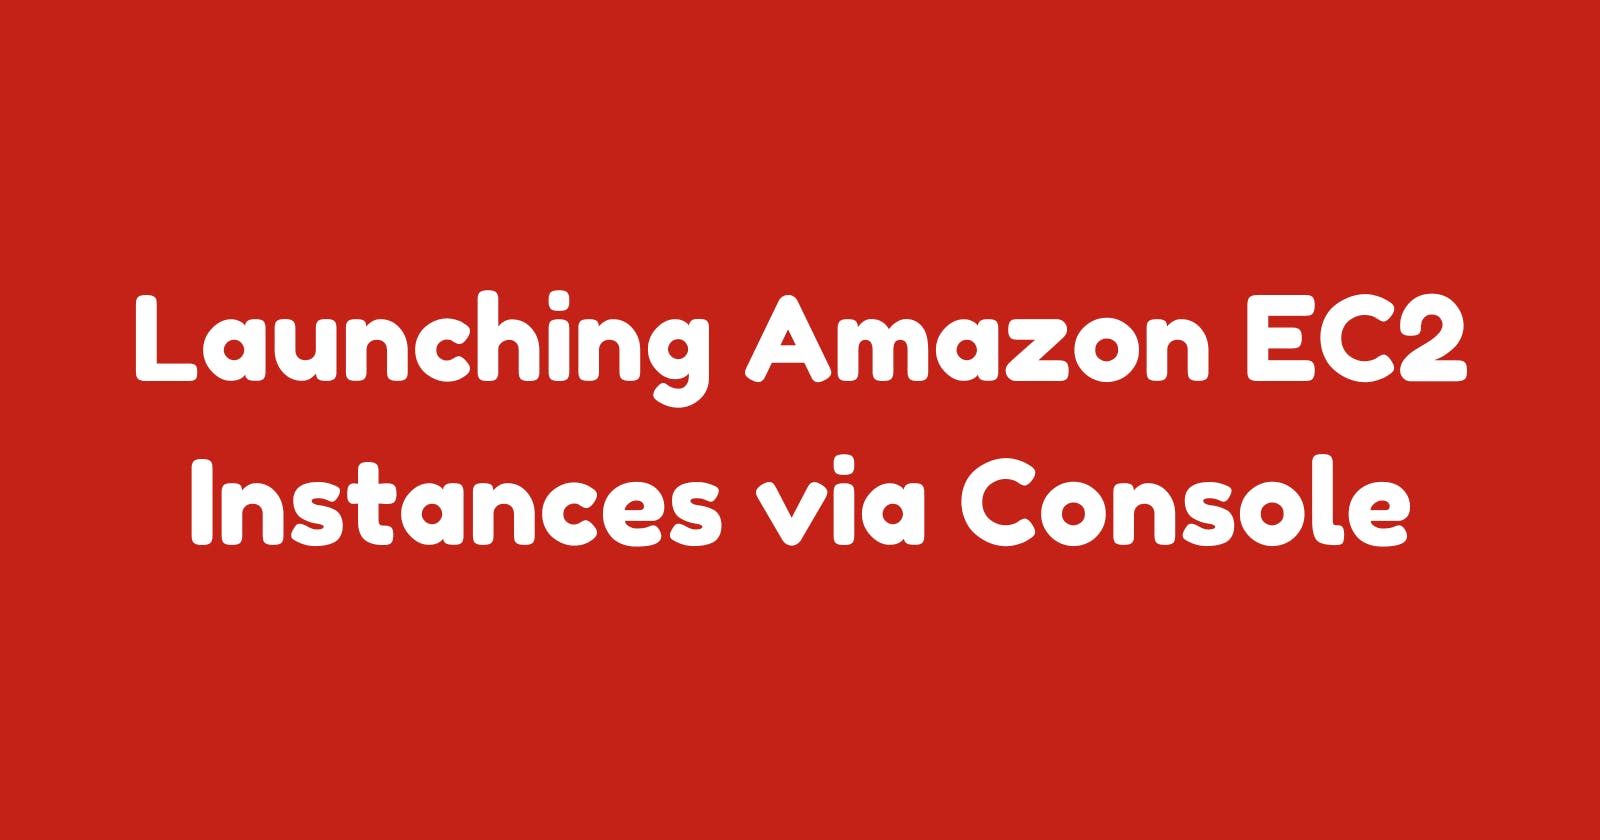 Launching Amazon EC2 Instances via Console